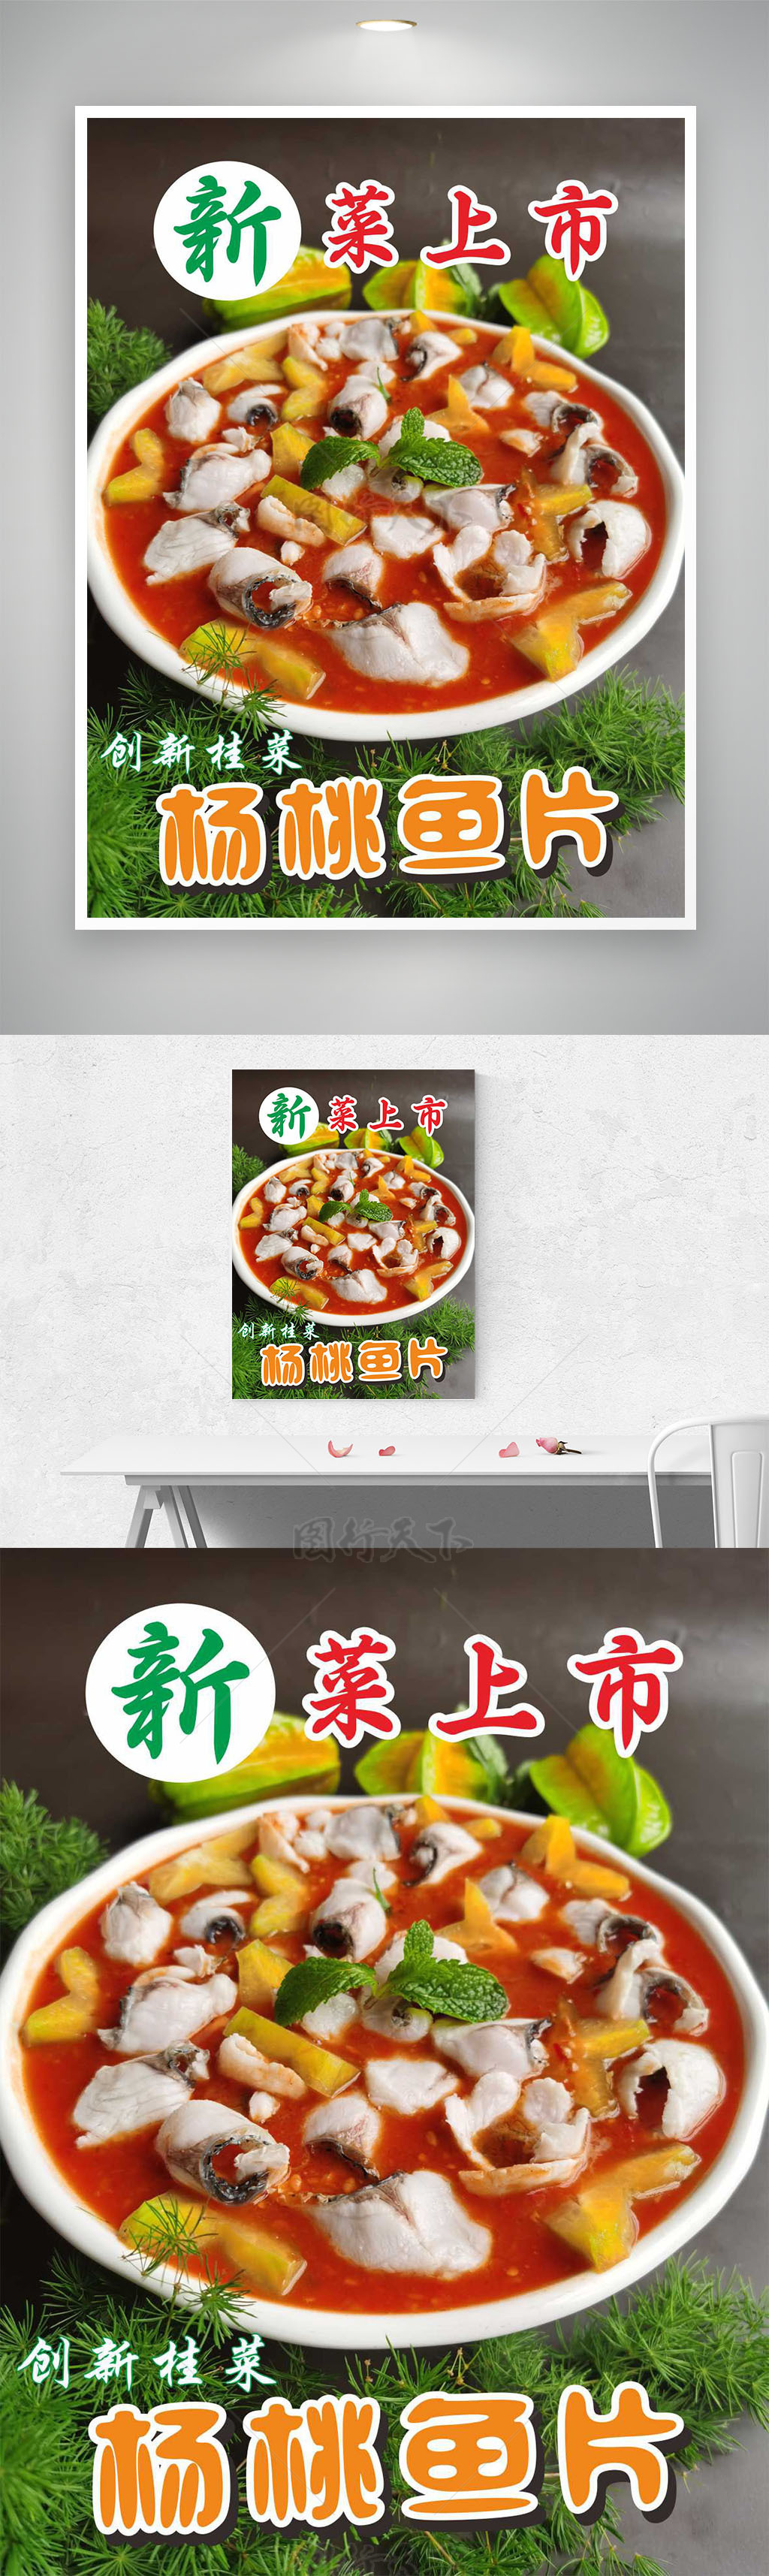 杨桃鱼片创新桂菜新菜上市